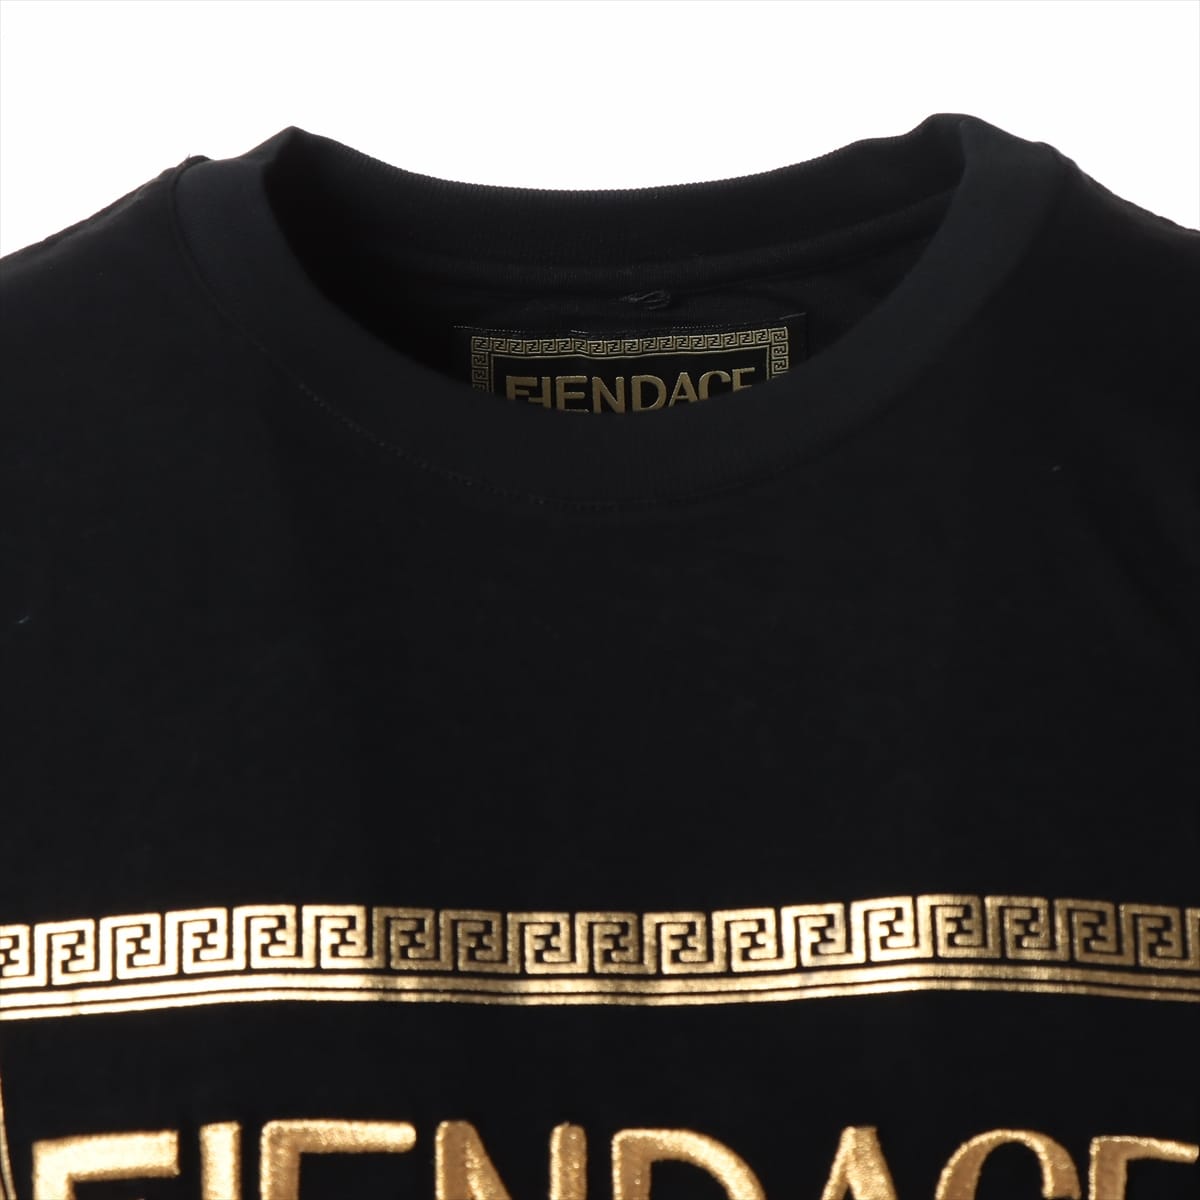 フェンディ×ヴェルサーチェ メデューサ 22SS コットン Tシャツ S メンズ ブラック  FENDACEロゴ刺?